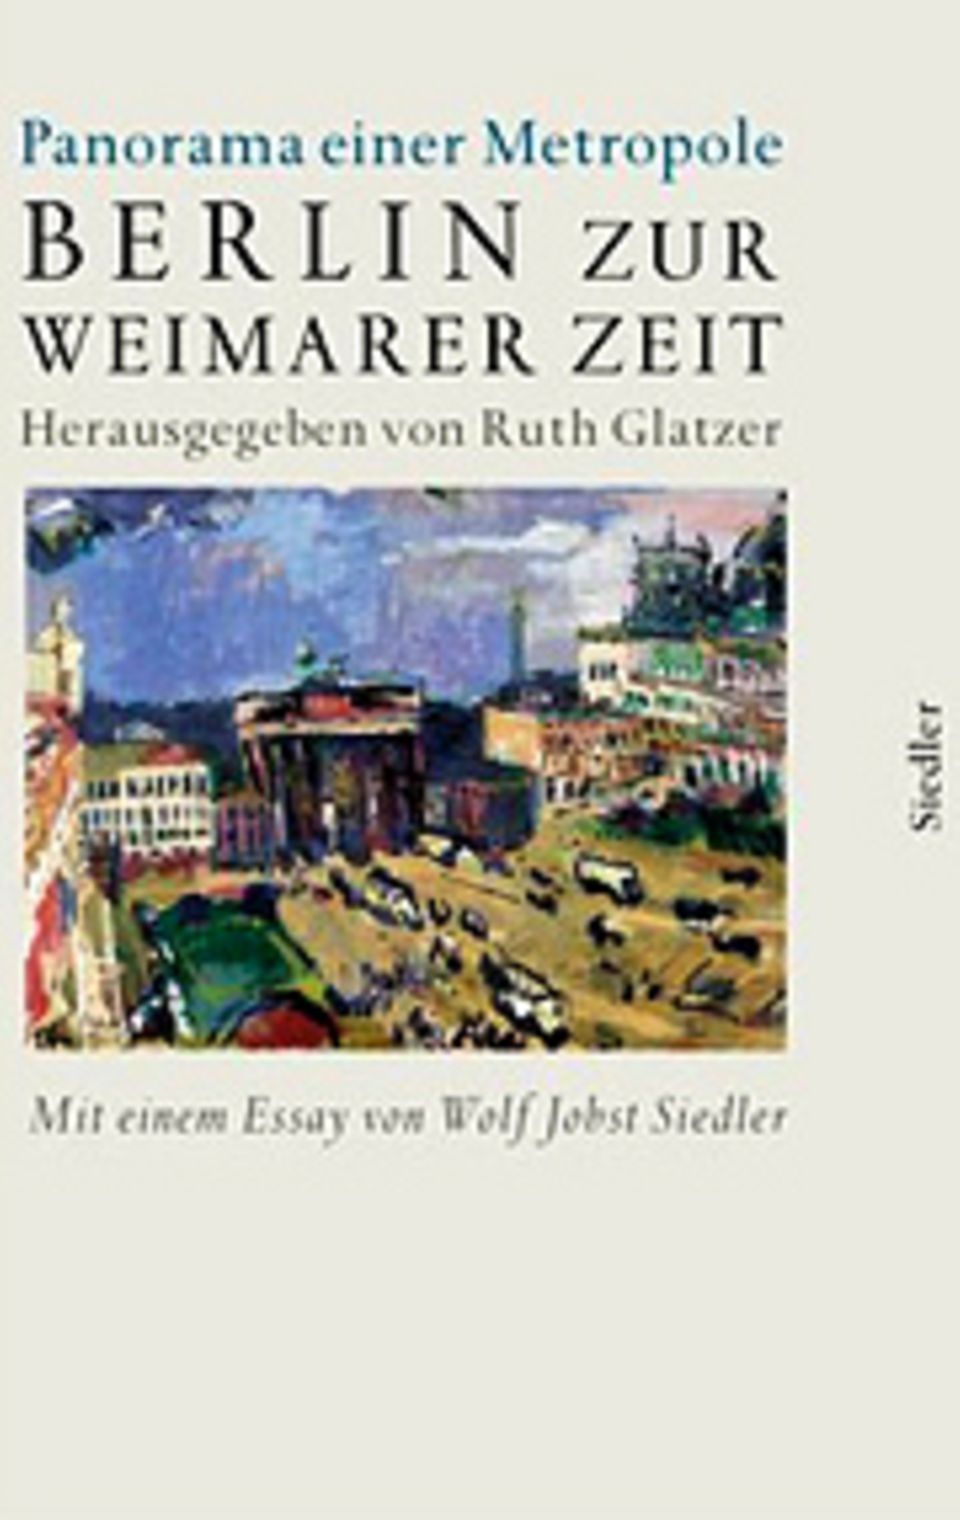 Buchtipps: Literatur zur Weimarer Republik